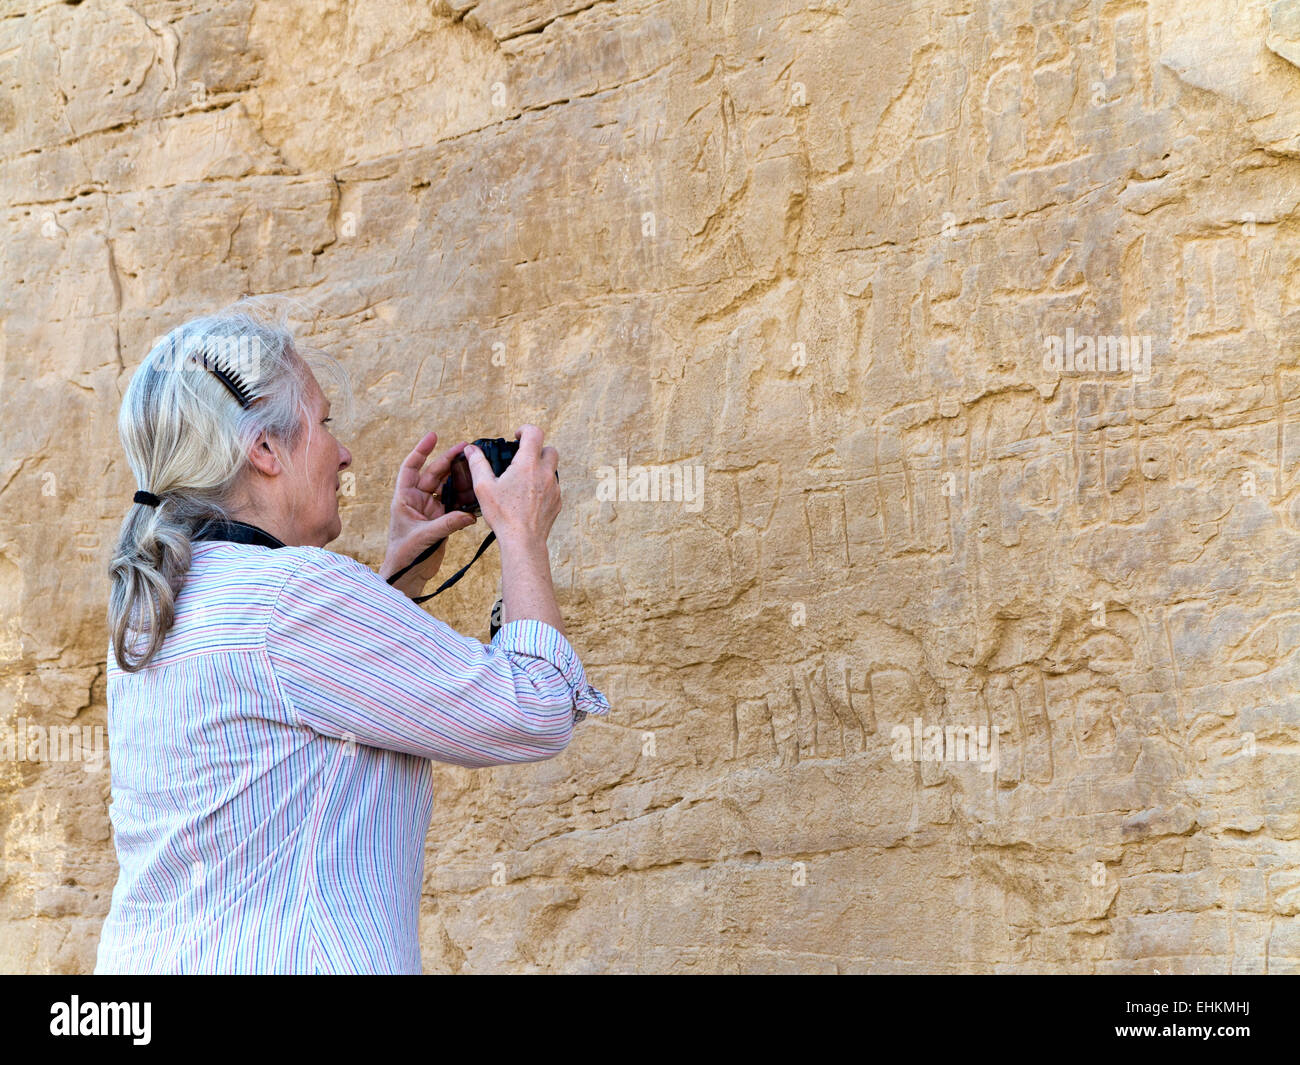 Photographier des femmes à l'art Rock Rock vautour à l'entrée de l'Oued Hellal, el Kab, ancienne Nekheb dans l'est désert, Egypte Banque D'Images